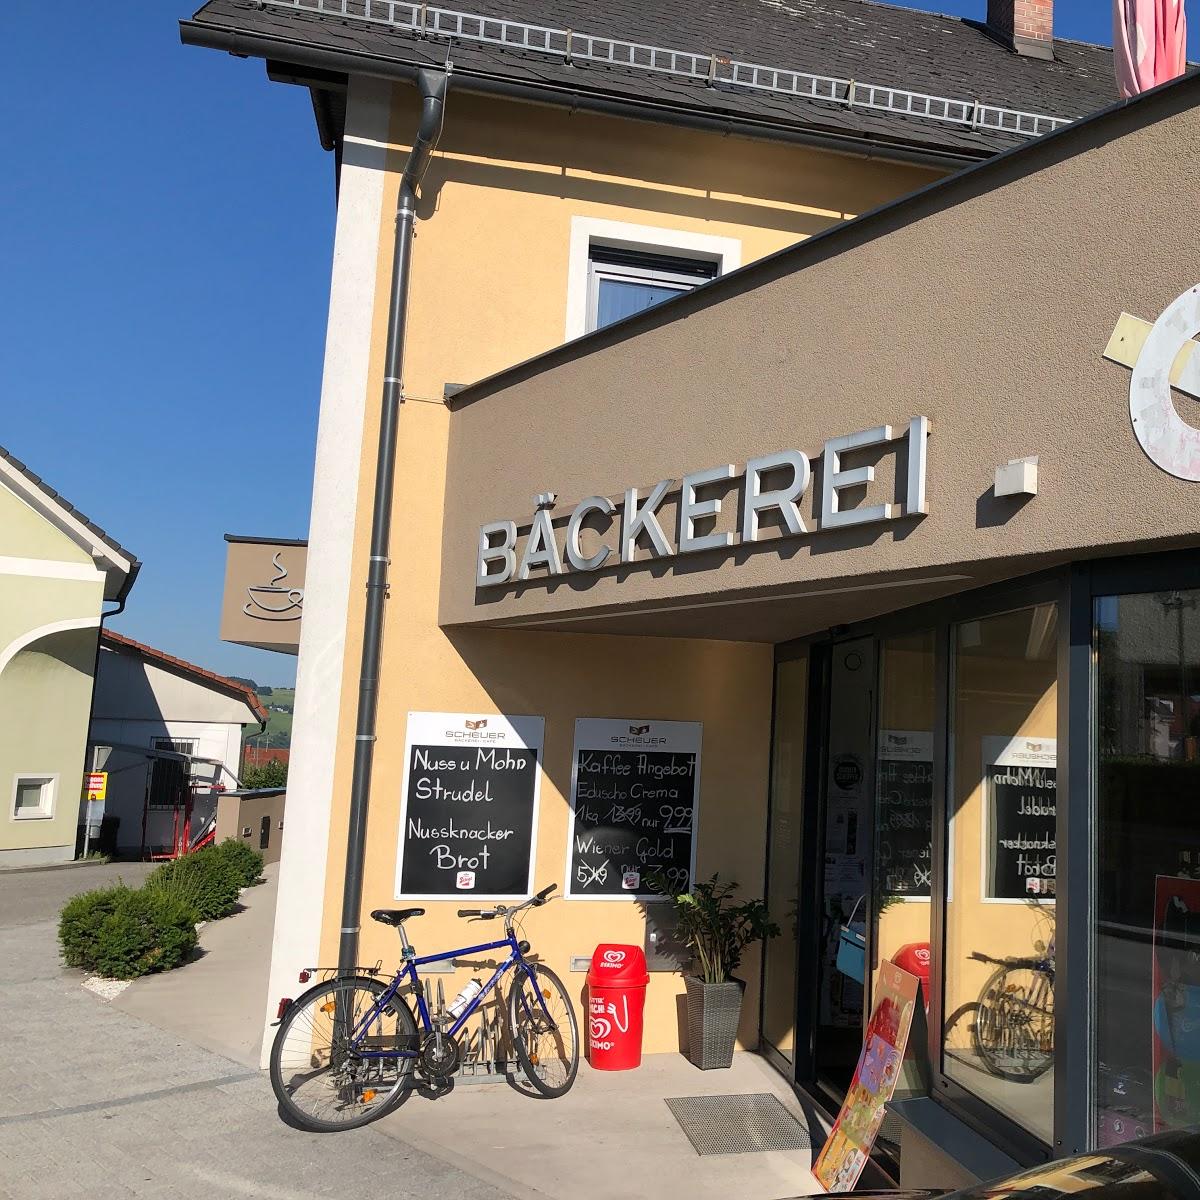 Restaurant "Bäckerei-Cafe Scheuer" in Haibach ob der Donau